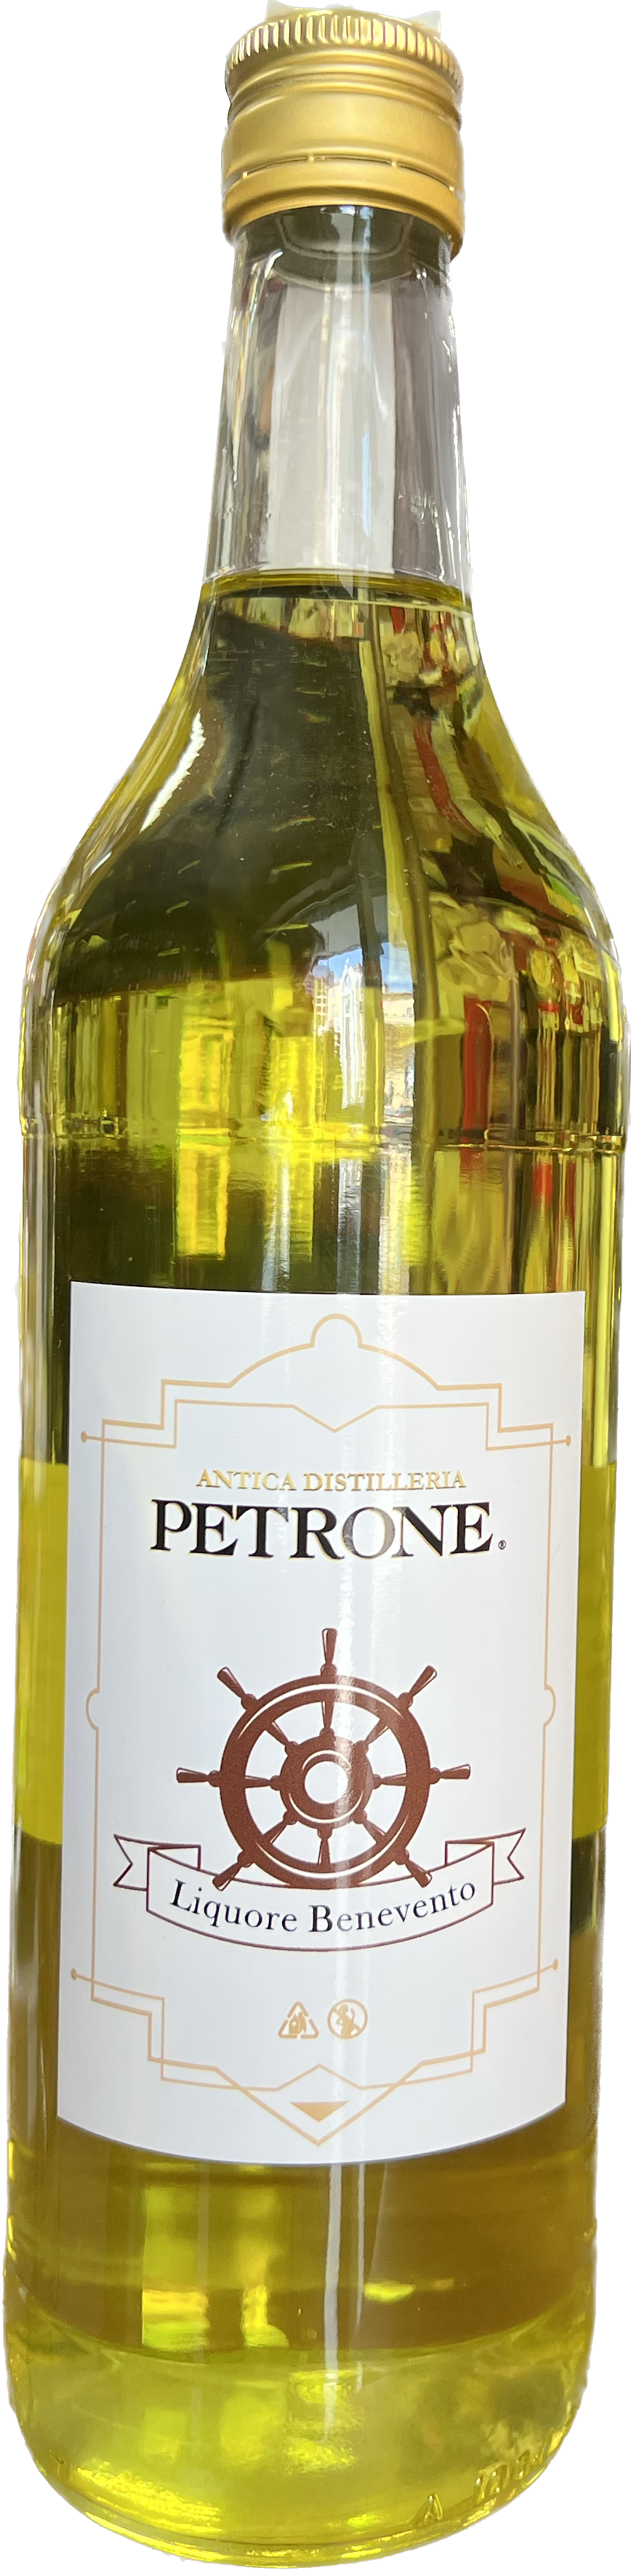 Liquore Benevento Petrone 40%vol  50cl - 1L